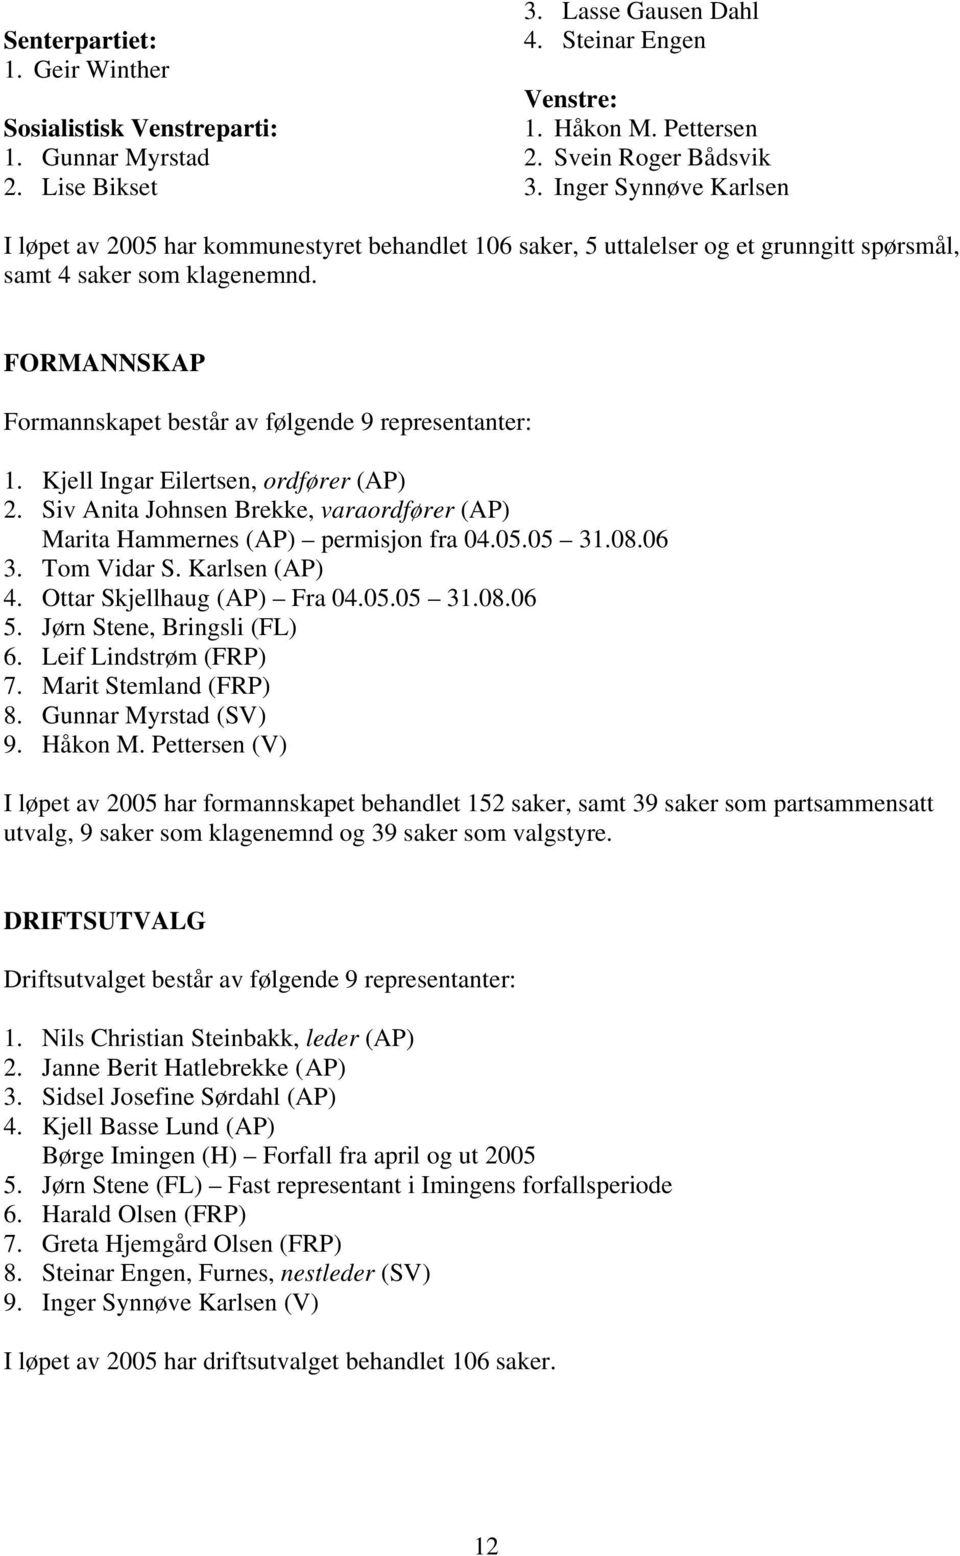 FORMANNSKAP Formannskapet består av følgende 9 representanter: 1. Kjell Ingar Eilertsen, ordfører (AP) 2. Siv Anita Johnsen Brekke, varaordfører (AP) Marita Hammernes (AP) permisjon fra 04.05.05 31.